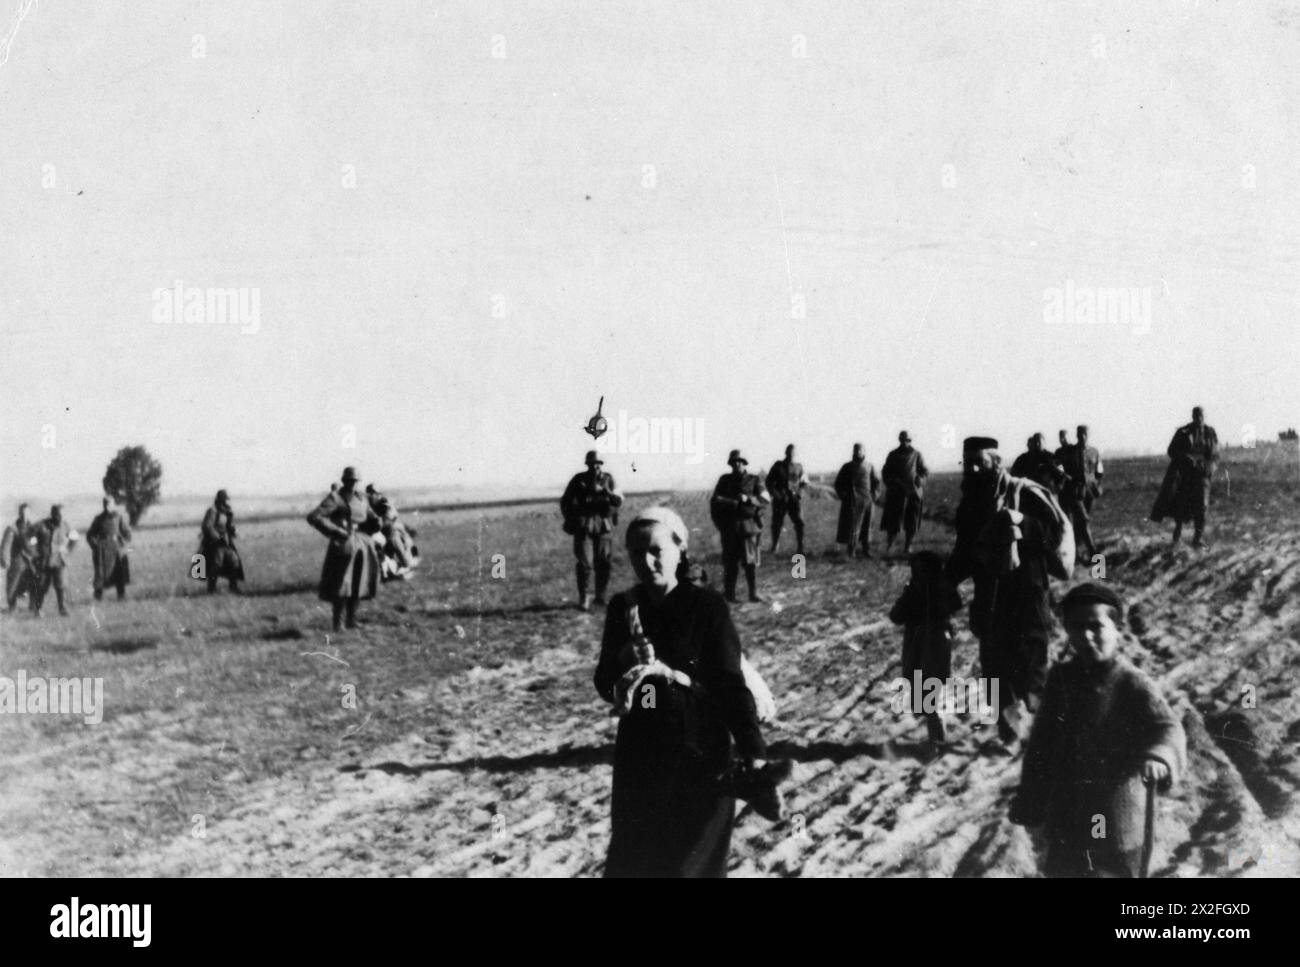 L'HOLOCAUSTE, 1941-1945 - Une famille juive entourée de soldats allemands (peut-être d'un Einsatzgruppe) sur le terrain, probablement pour leur exécution. Lieu inconnu Schutzstaffel (SS) Banque D'Images